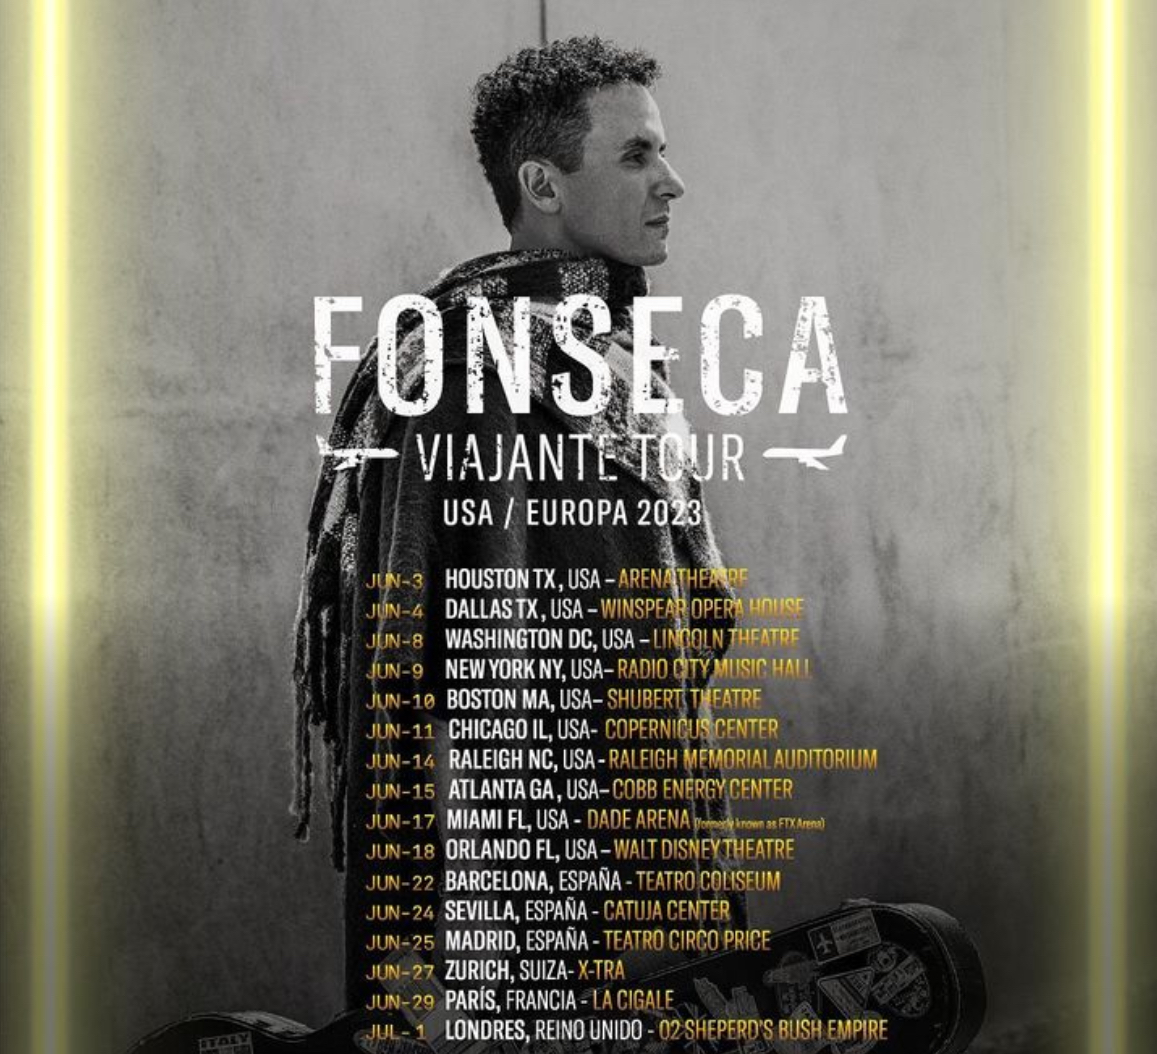 Fechas de conciertos de Fonseca, Viajante Tour 2023